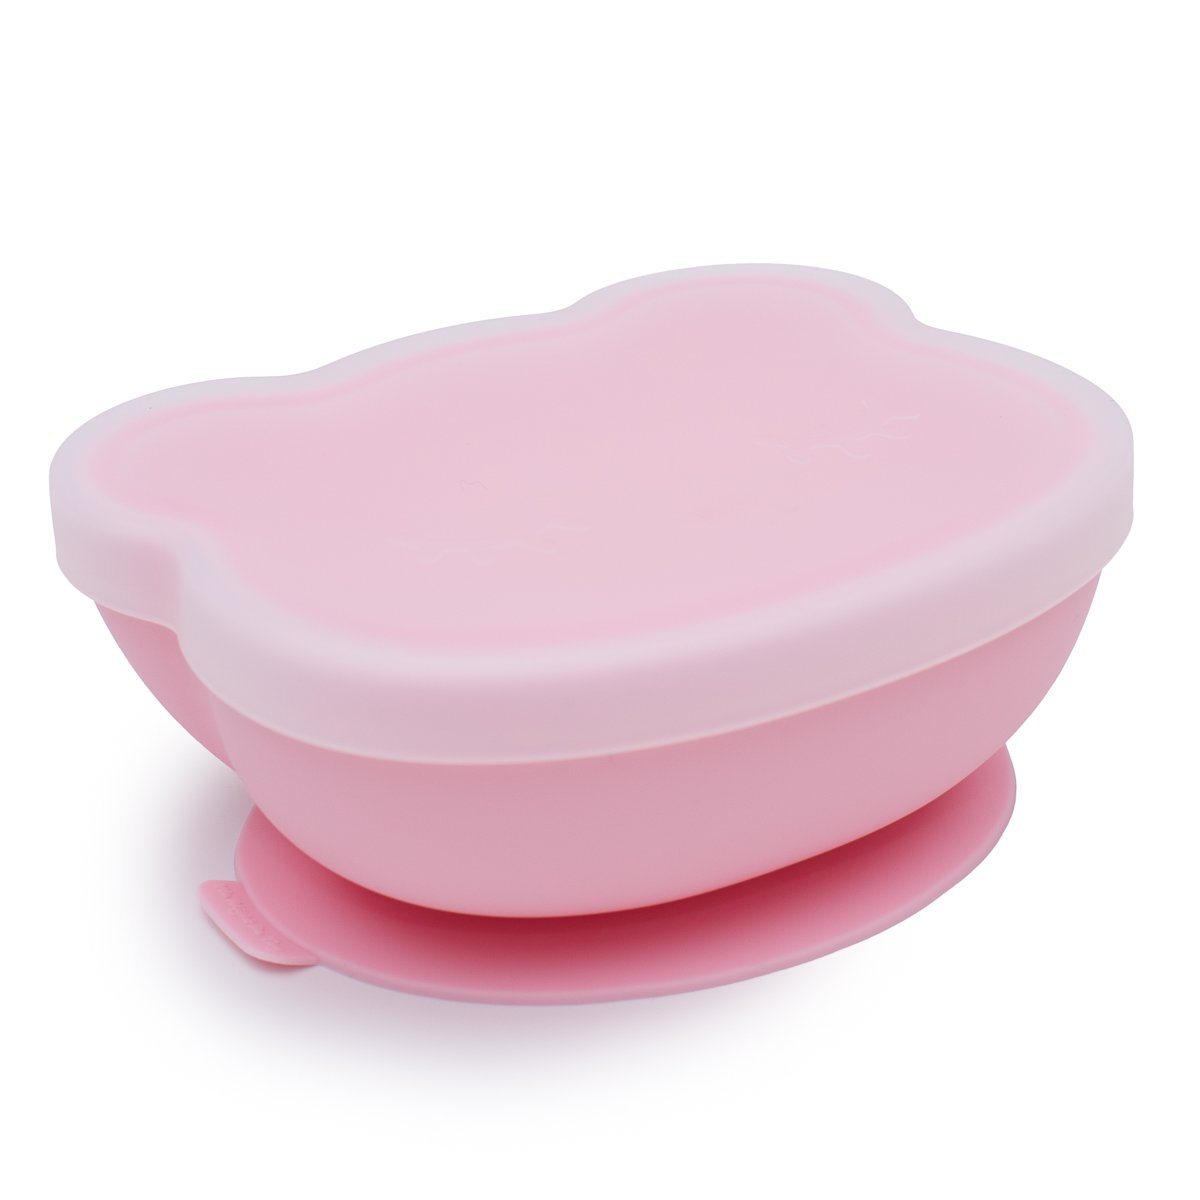 Stickie Bowl (Powder Pink)